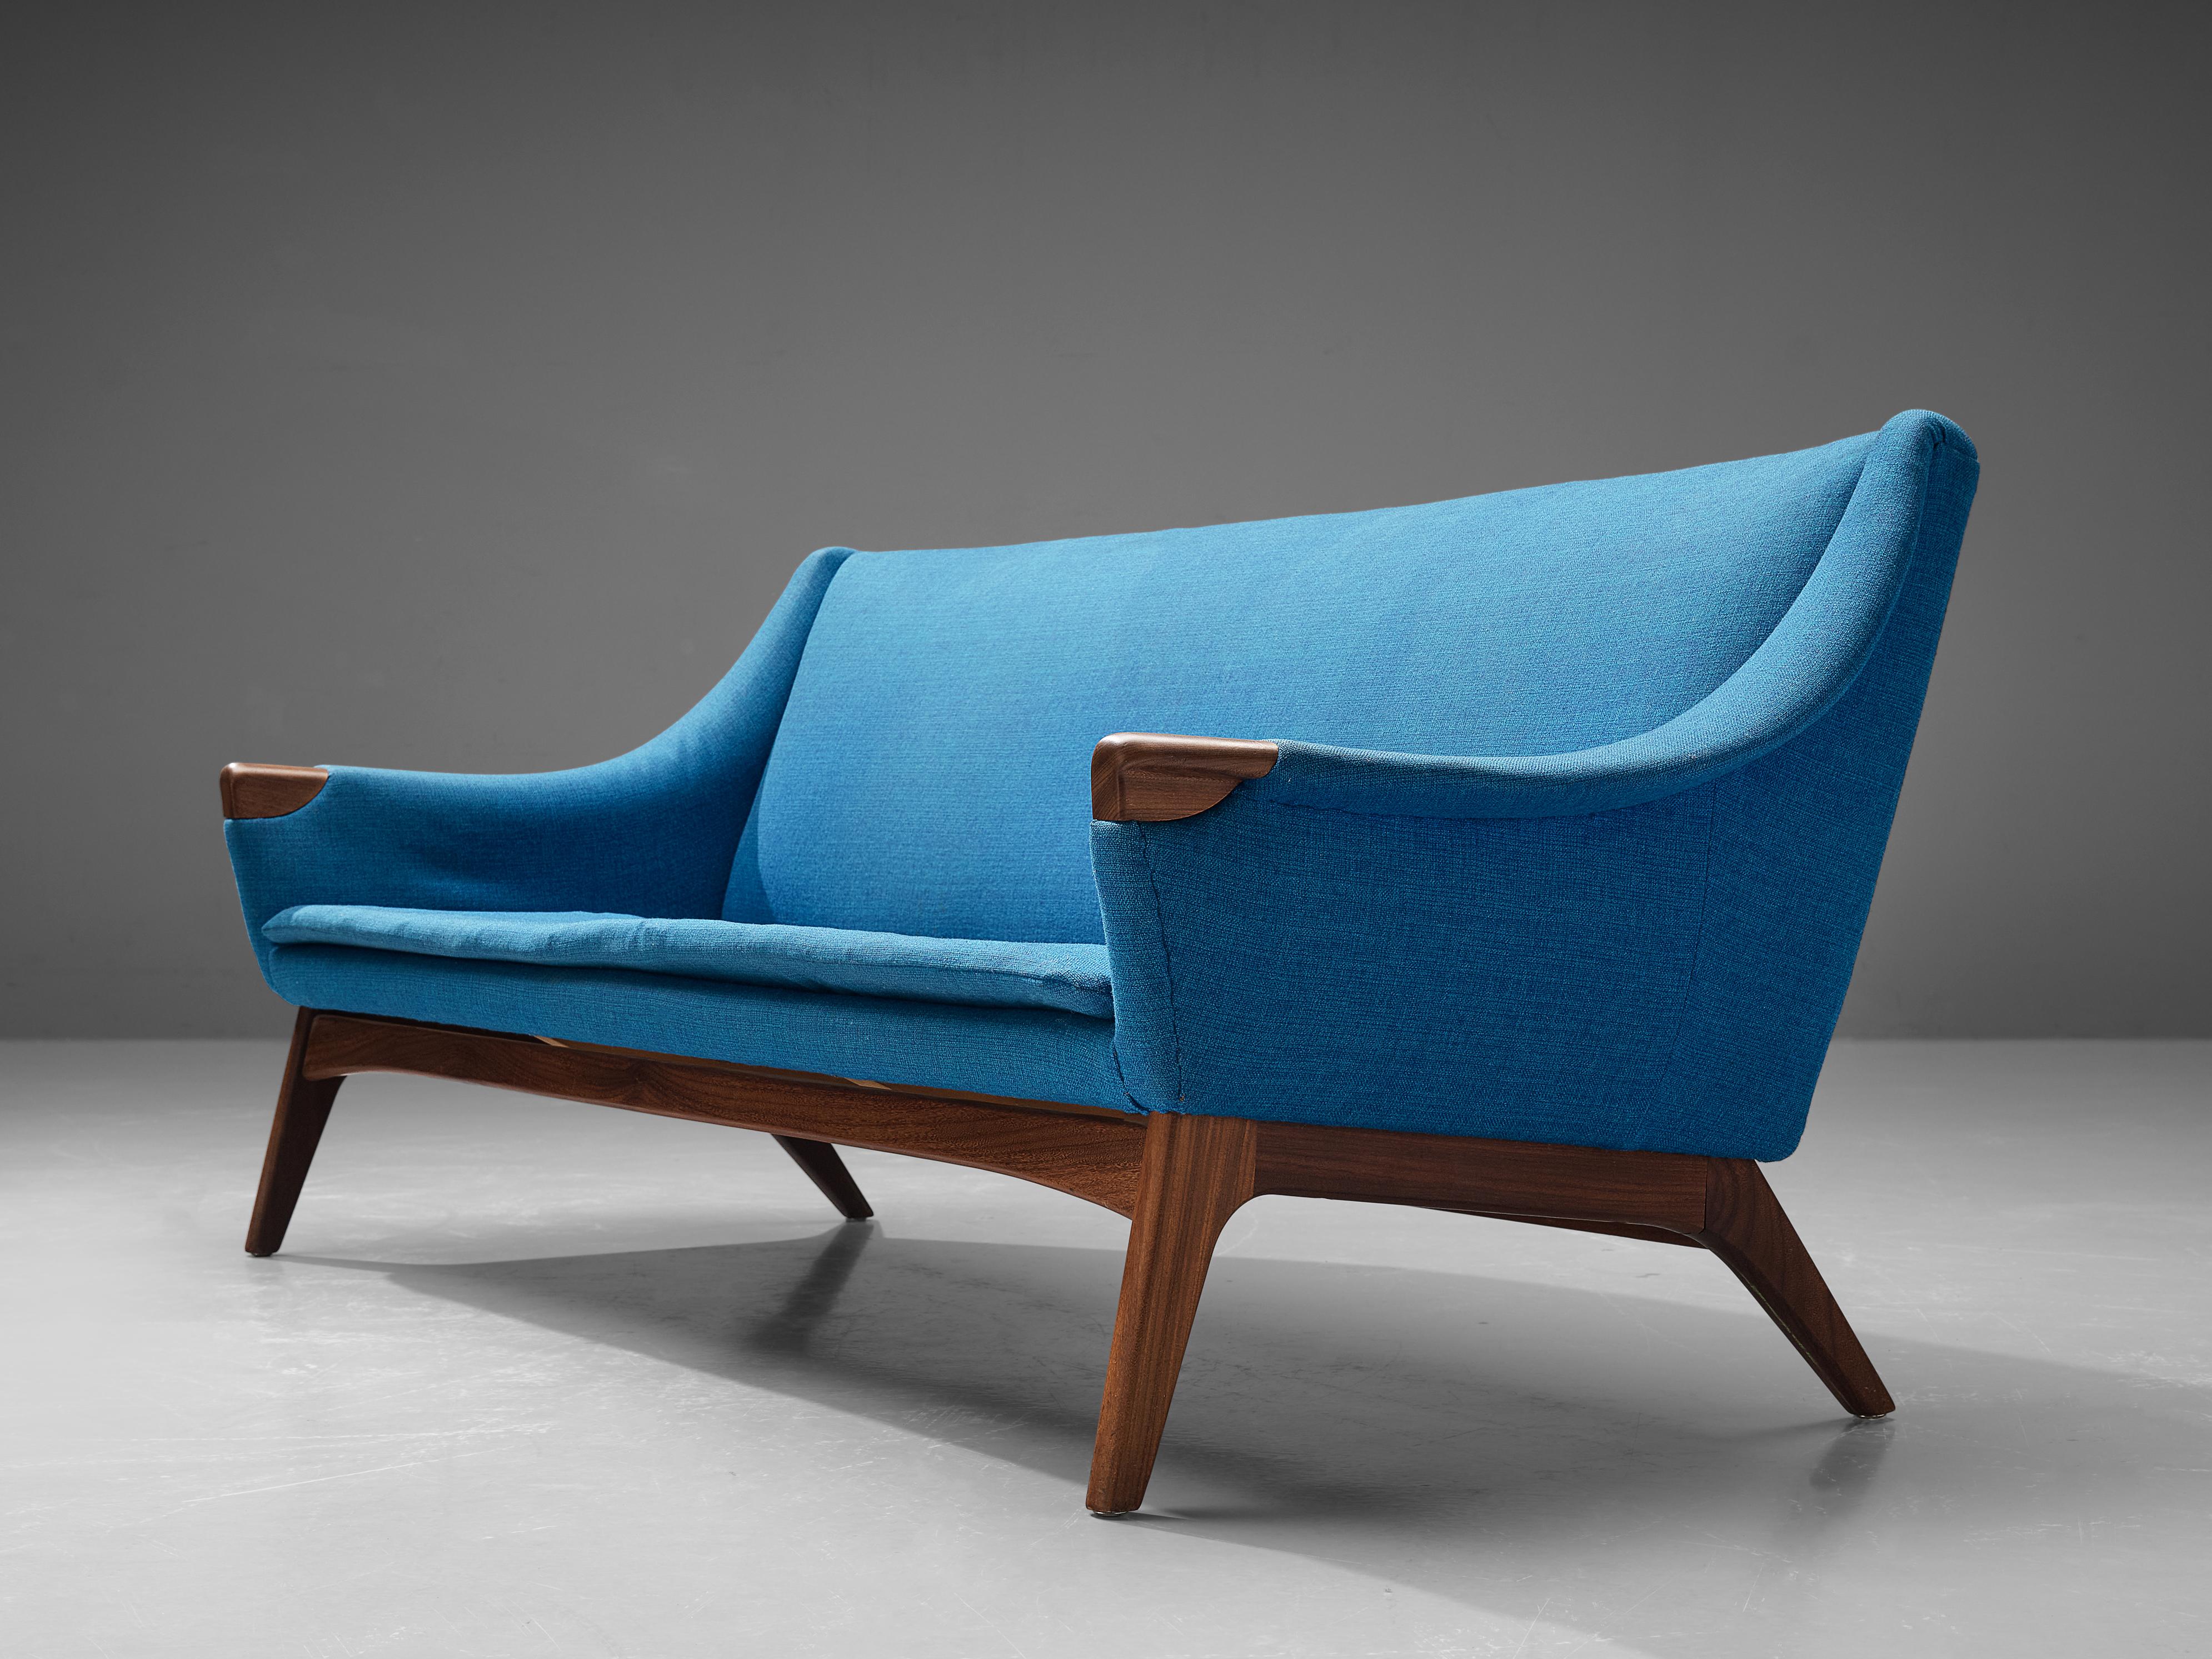 Canapé danois, teck, tissu, Danemark, années 1960 
 
Ce canapé trois places est doté d'un revêtement en tissu bleu raffiné et les pieds fuselés à l'exécution élégante sont en teck. Un détail remarquable sont les extrémités révélatrices en teck des